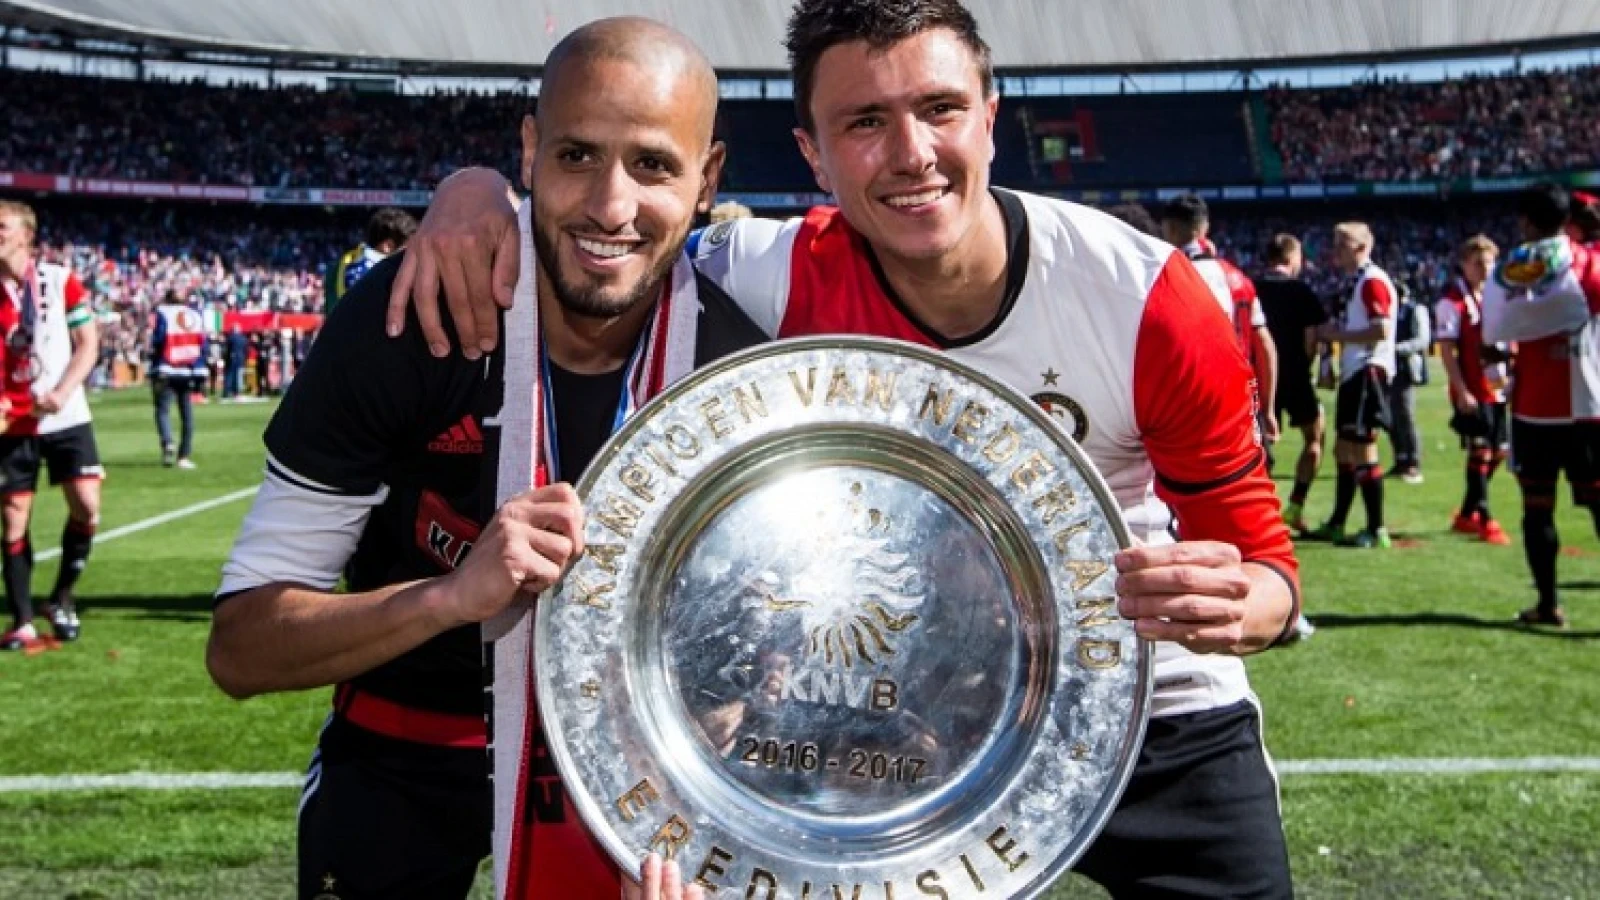 'Een buitenspeler van Feyenoord moet dat aantal toch makkelijk kunnen halen'